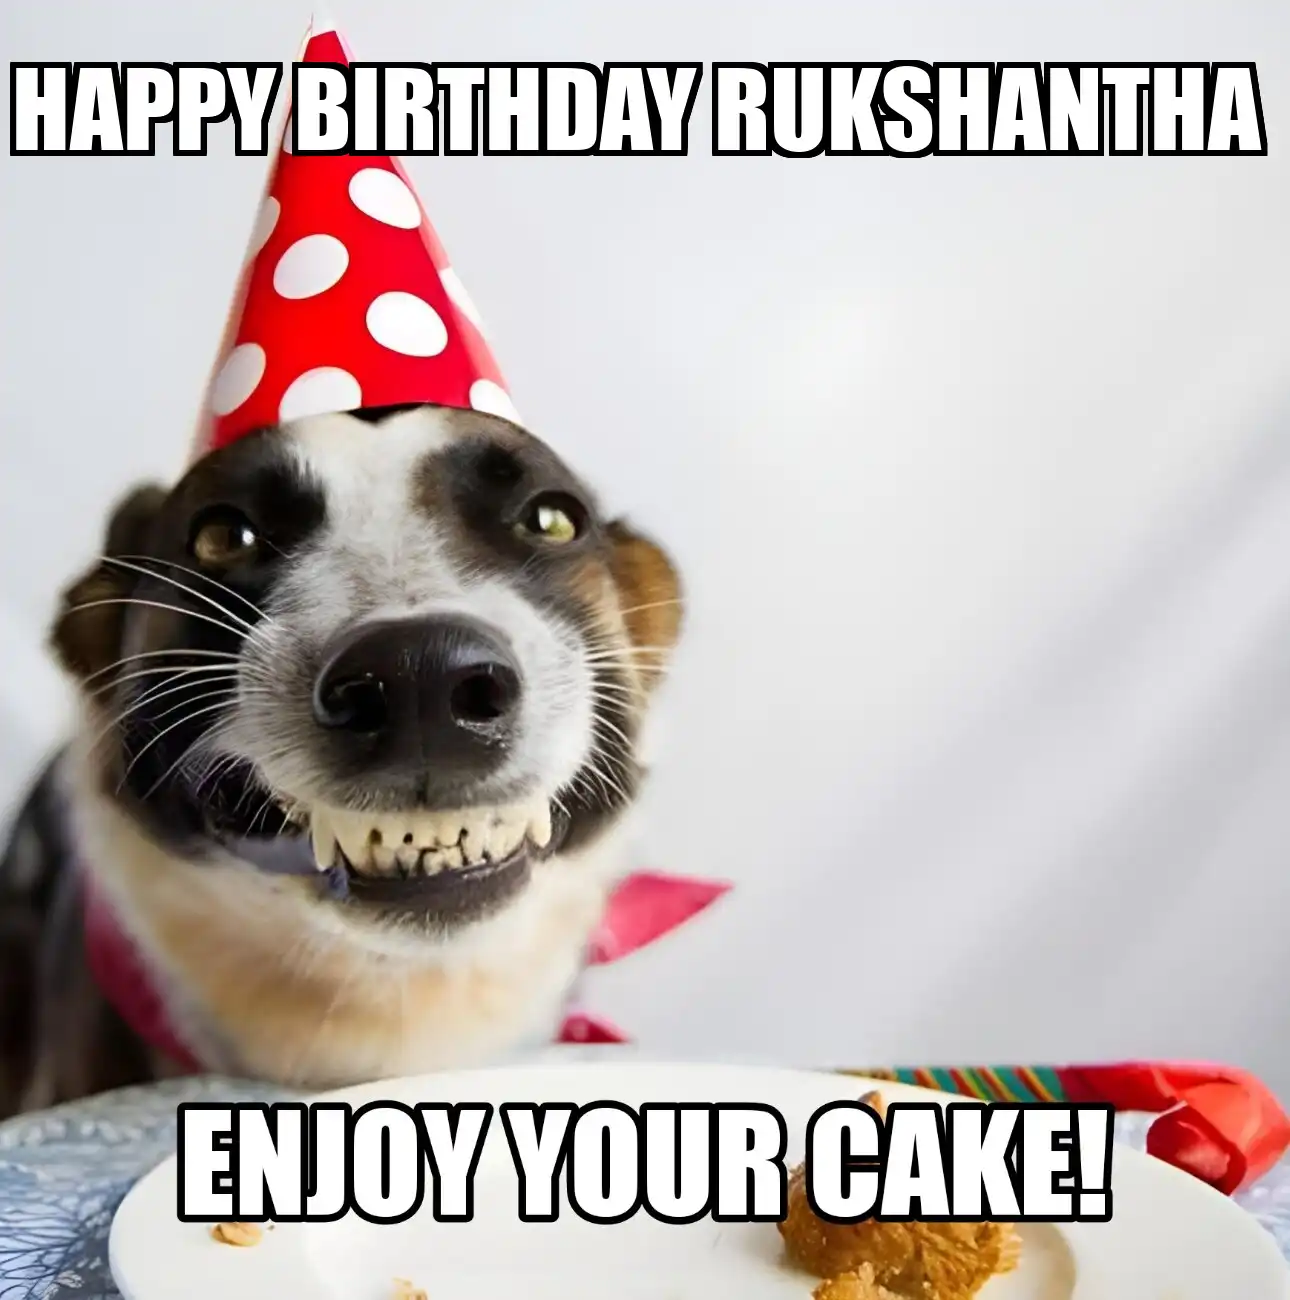 Happy Birthday Rukshantha Enjoy Your Cake Dog Meme